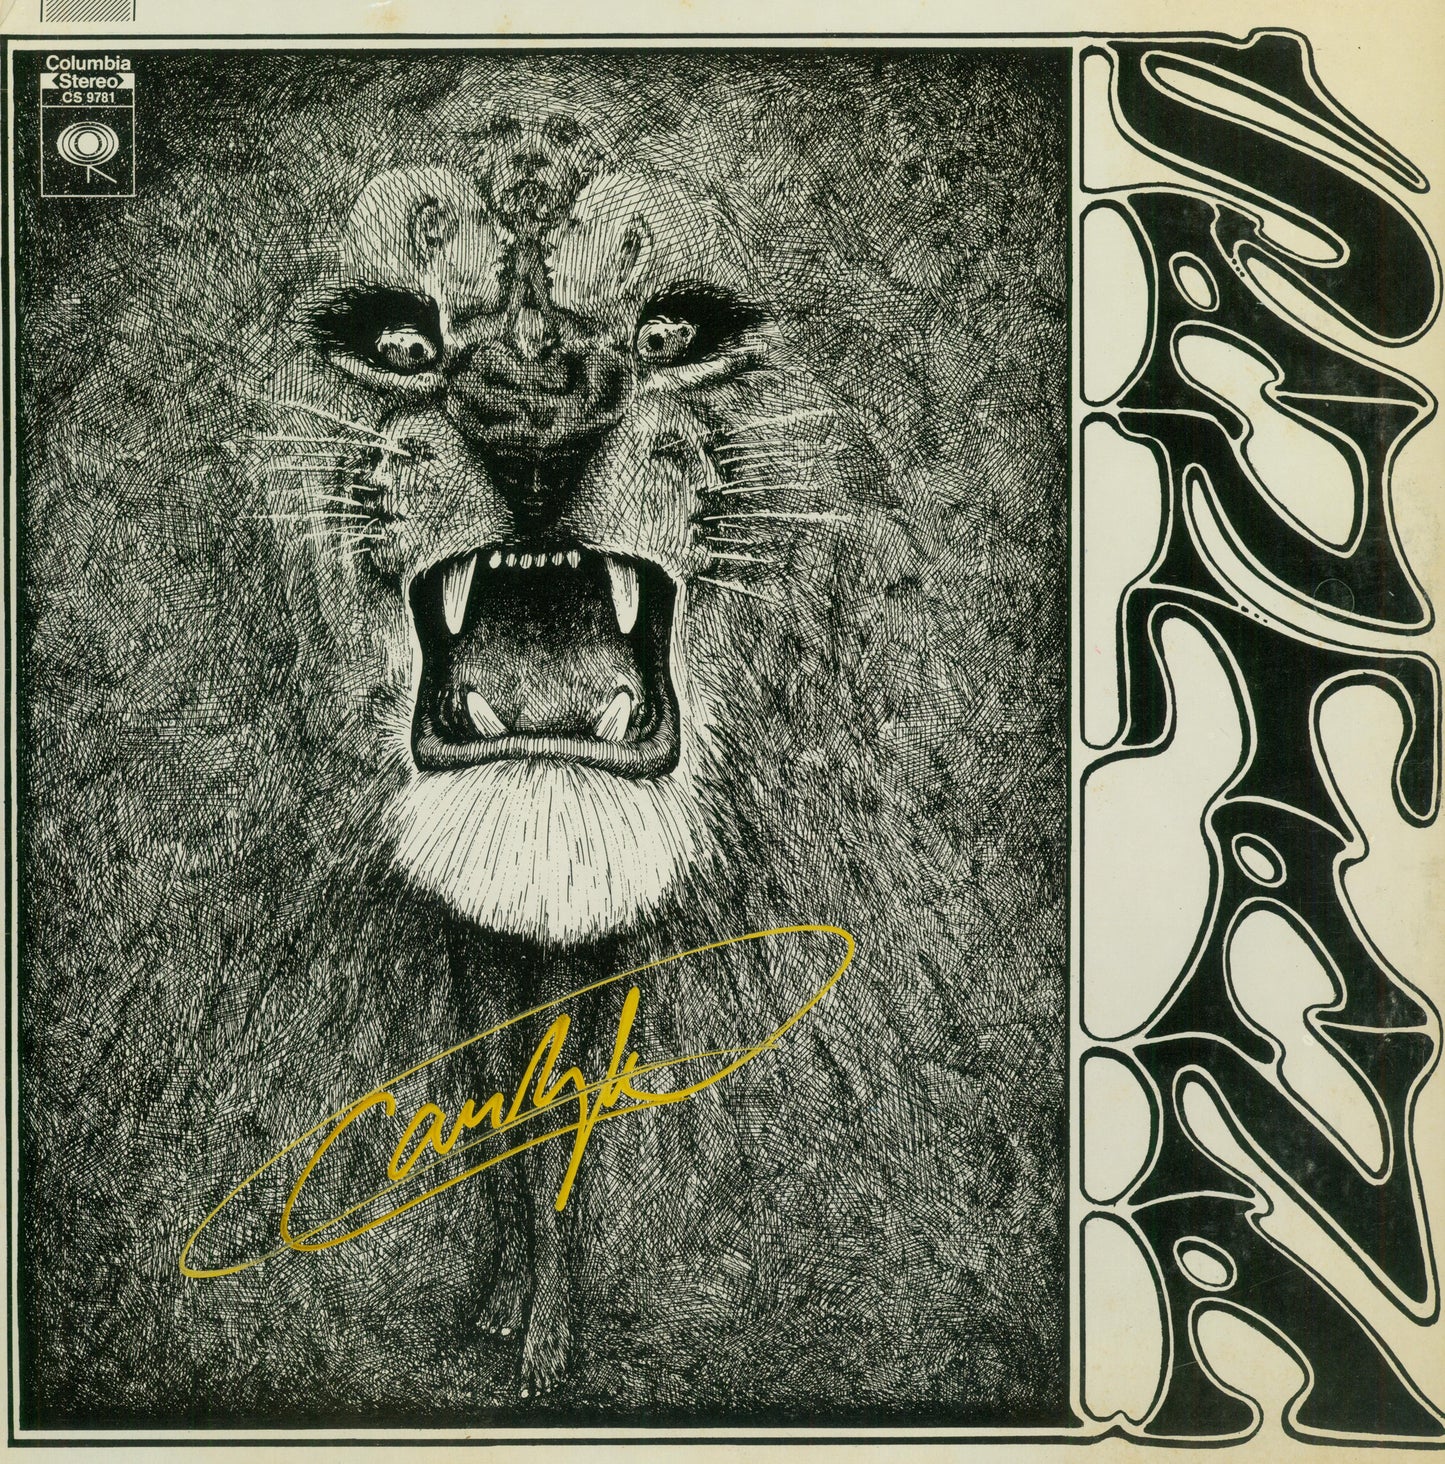 Santana Autographed LP - Zion Graphic Collectibles